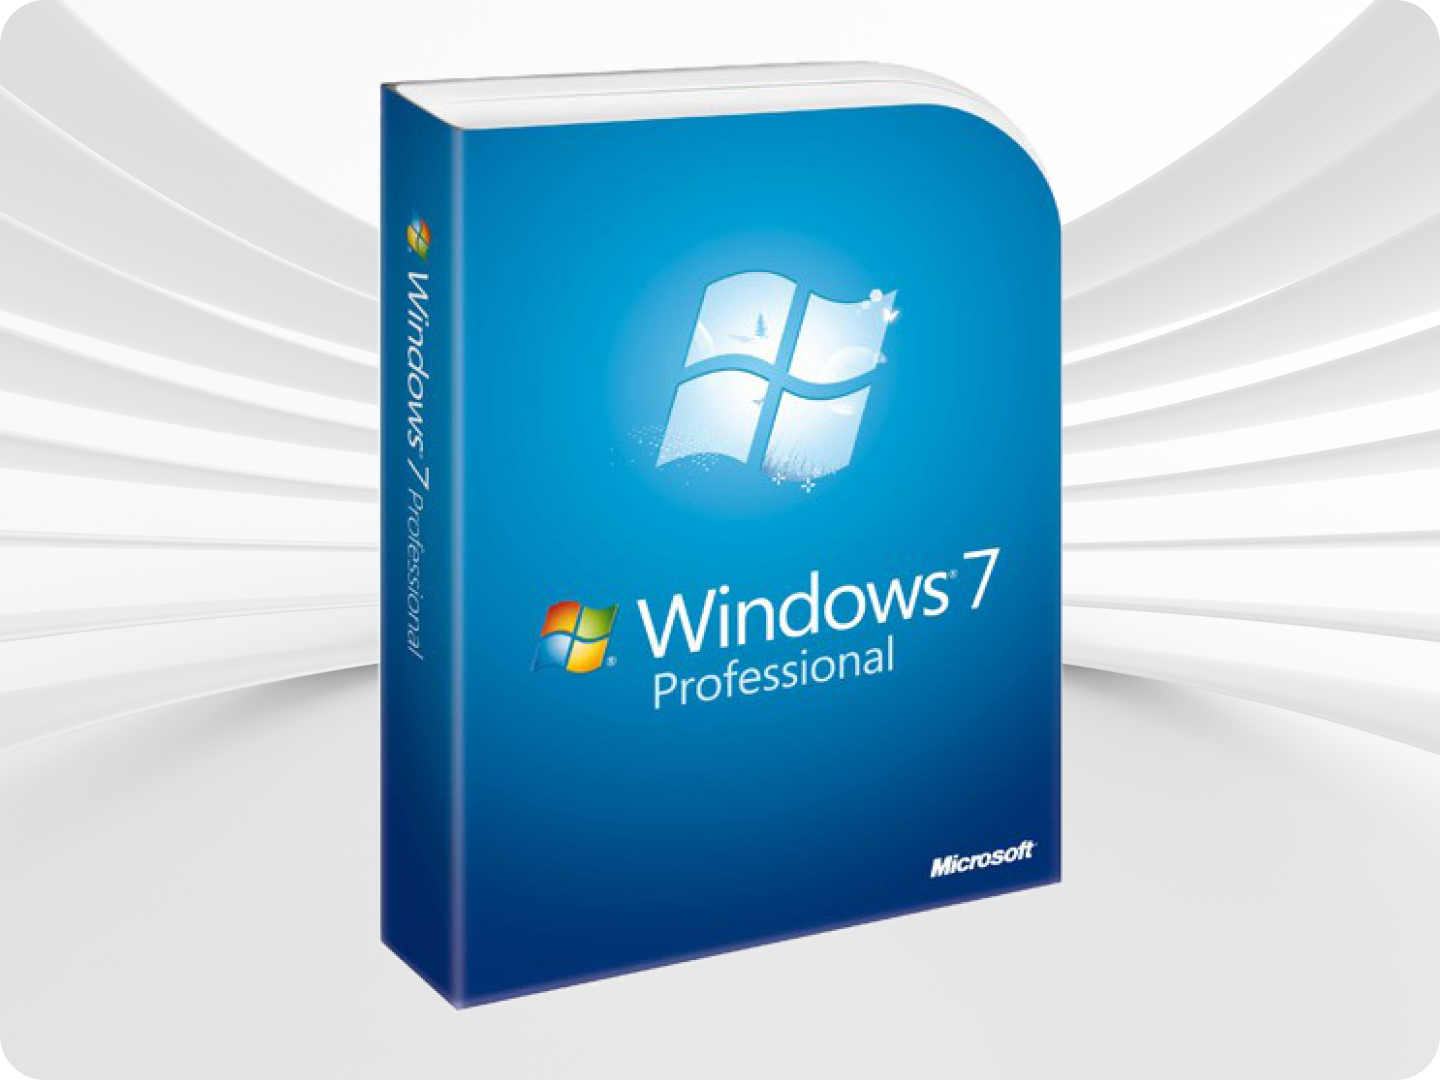 Microsoft Windows 7 Professional / Цифровой ключ / Лицензия / Русский язык.